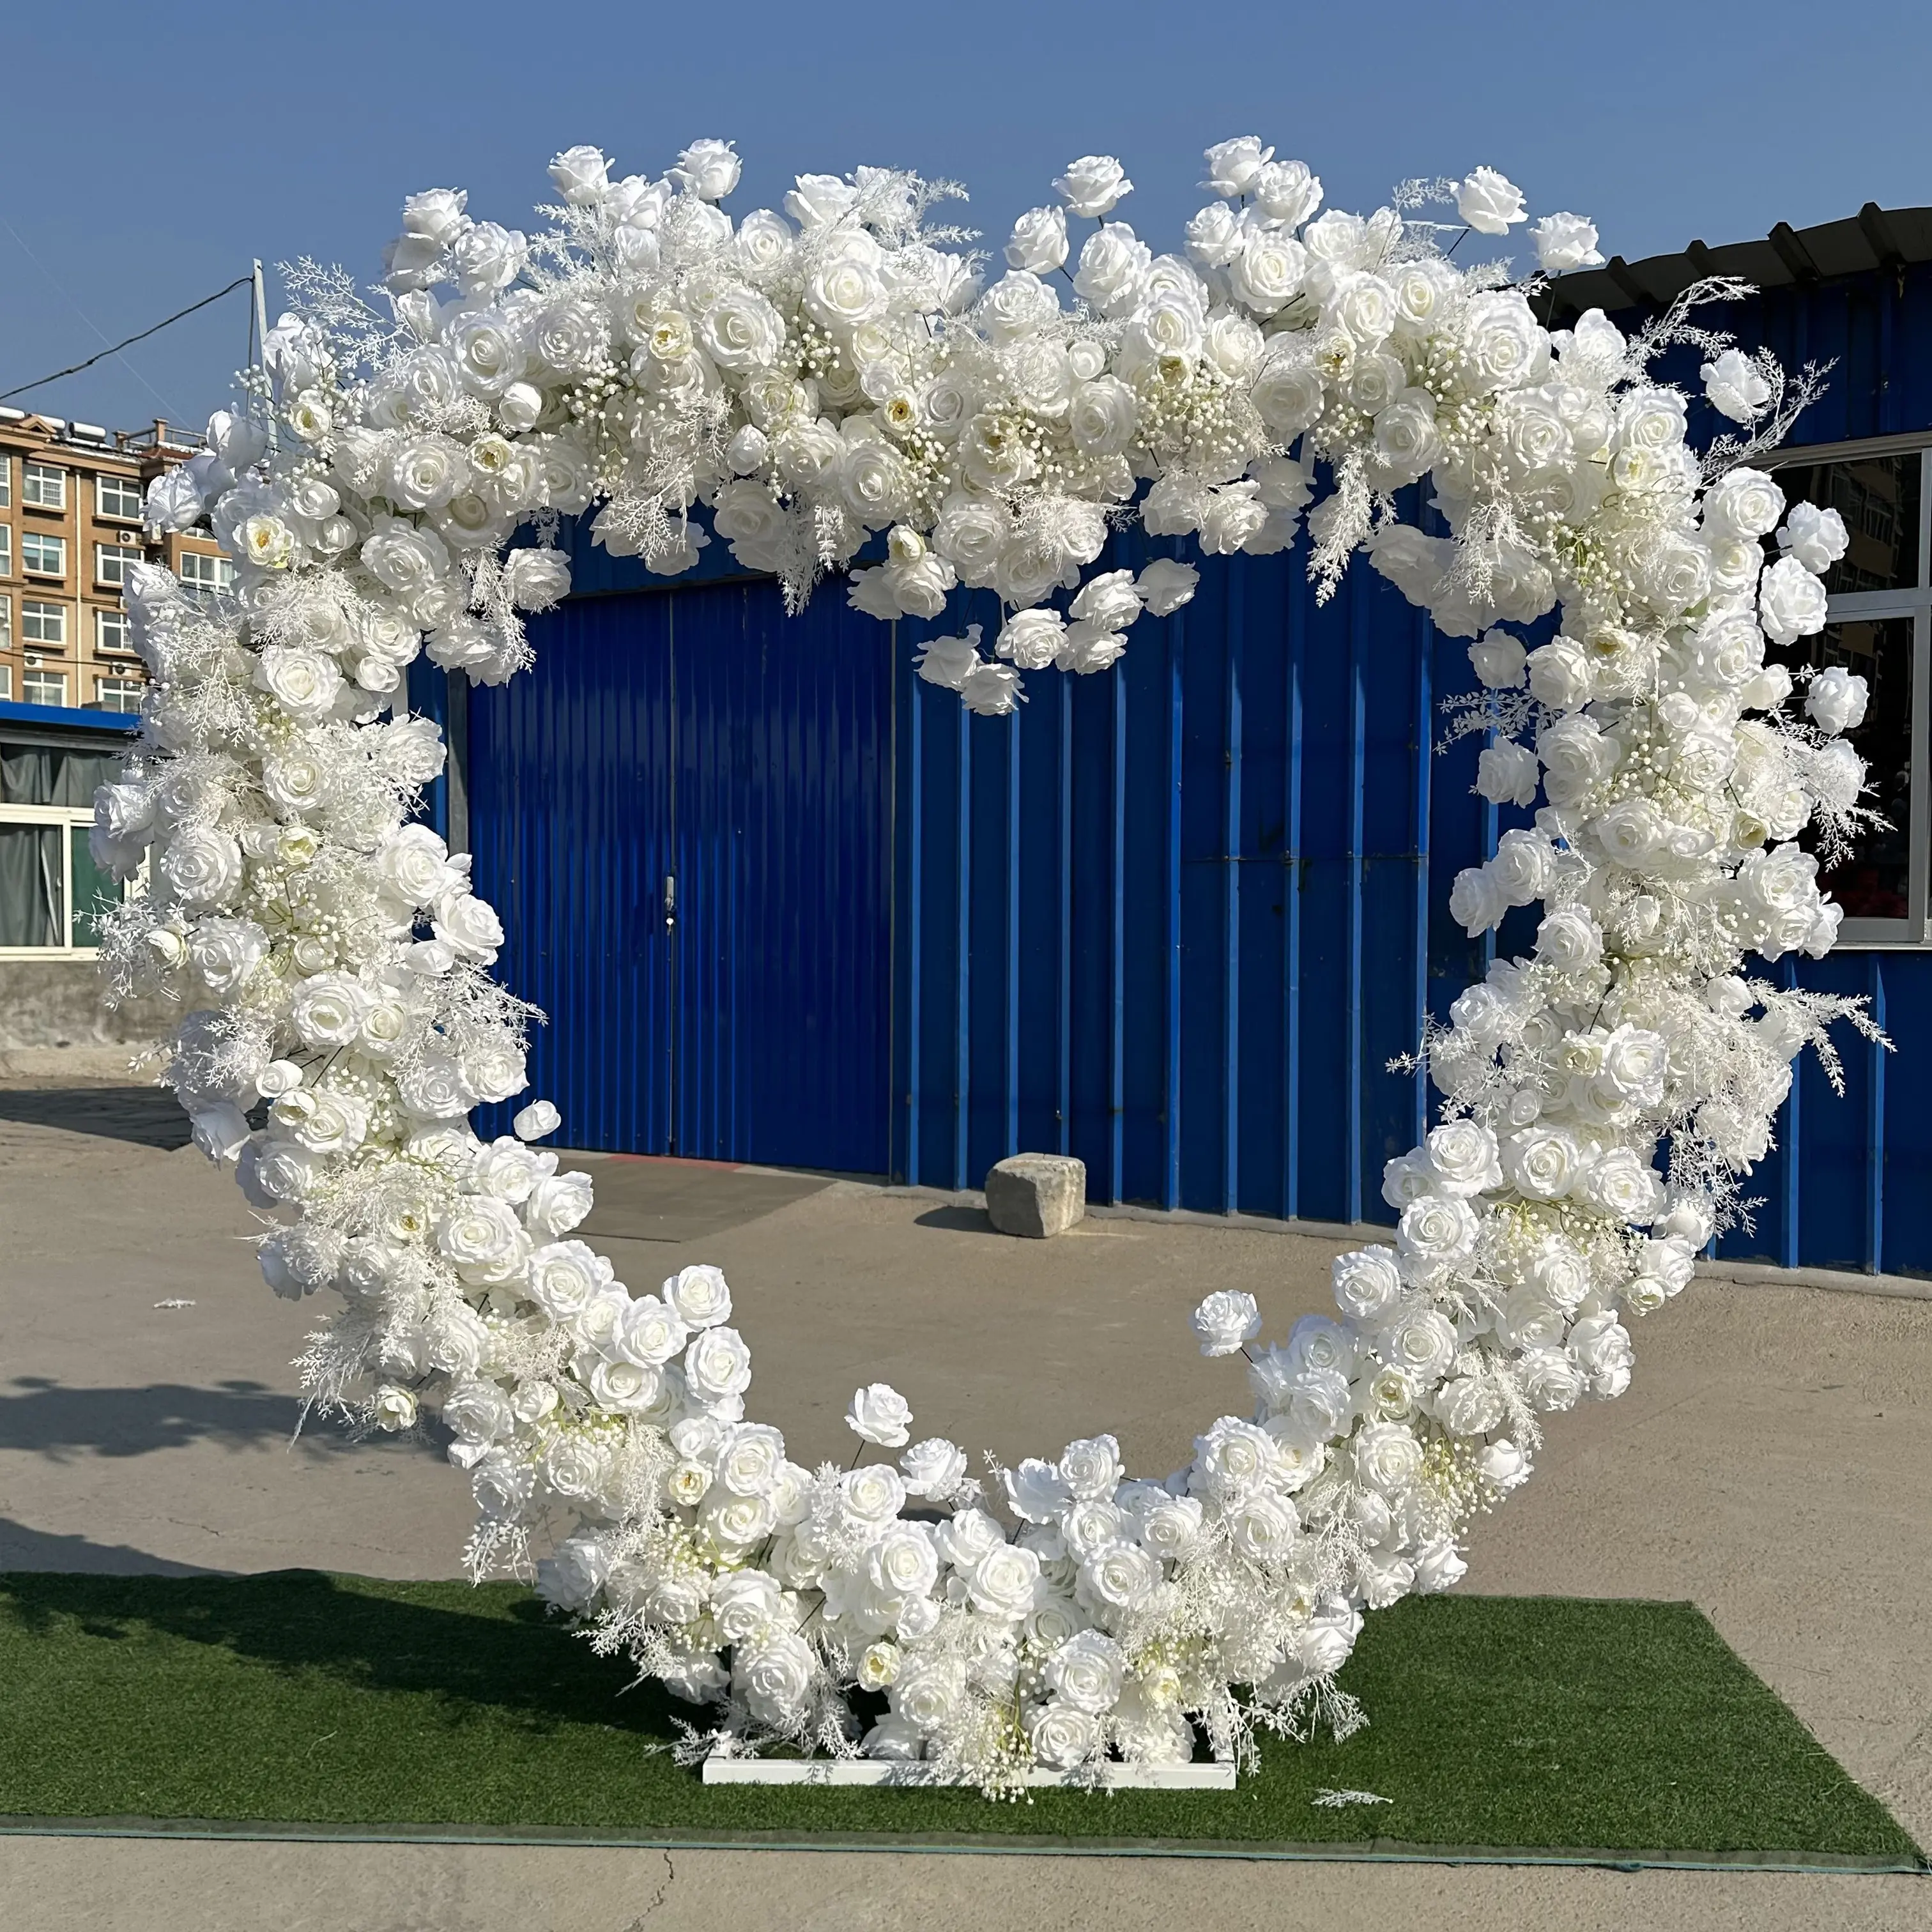 L-HFA014 Wholesale artificial flowers wedding arch heart shape flower arch backdrop arrangement for event decoration